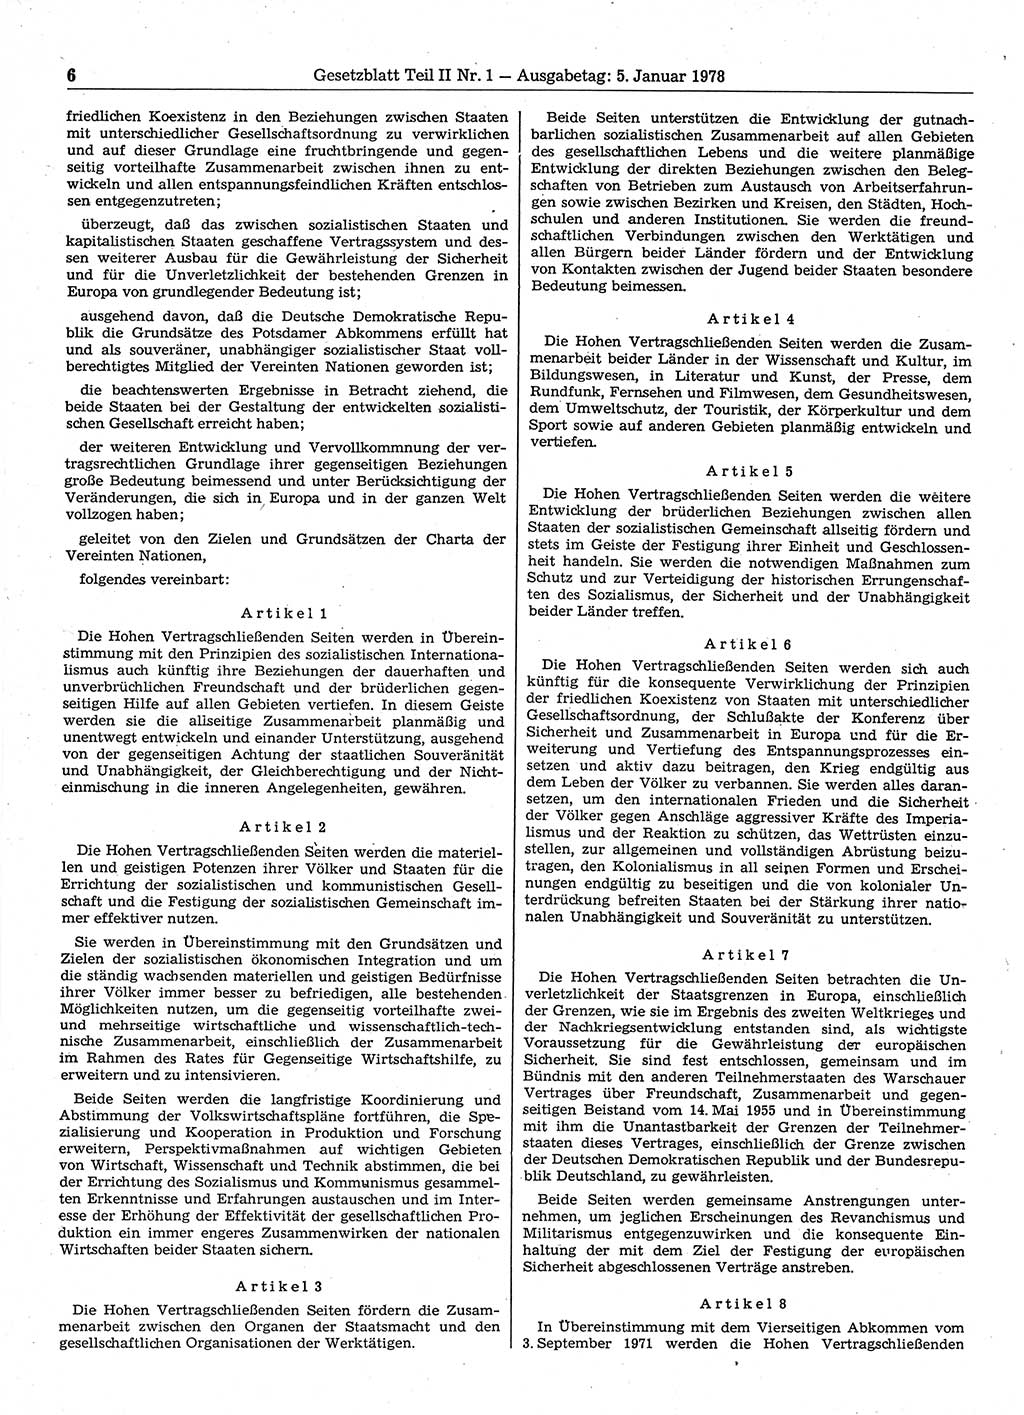 Gesetzblatt (GBl.) der Deutschen Demokratischen Republik (DDR) Teil ⅠⅠ 1978, Seite 6 (GBl. DDR ⅠⅠ 1978, S. 6)